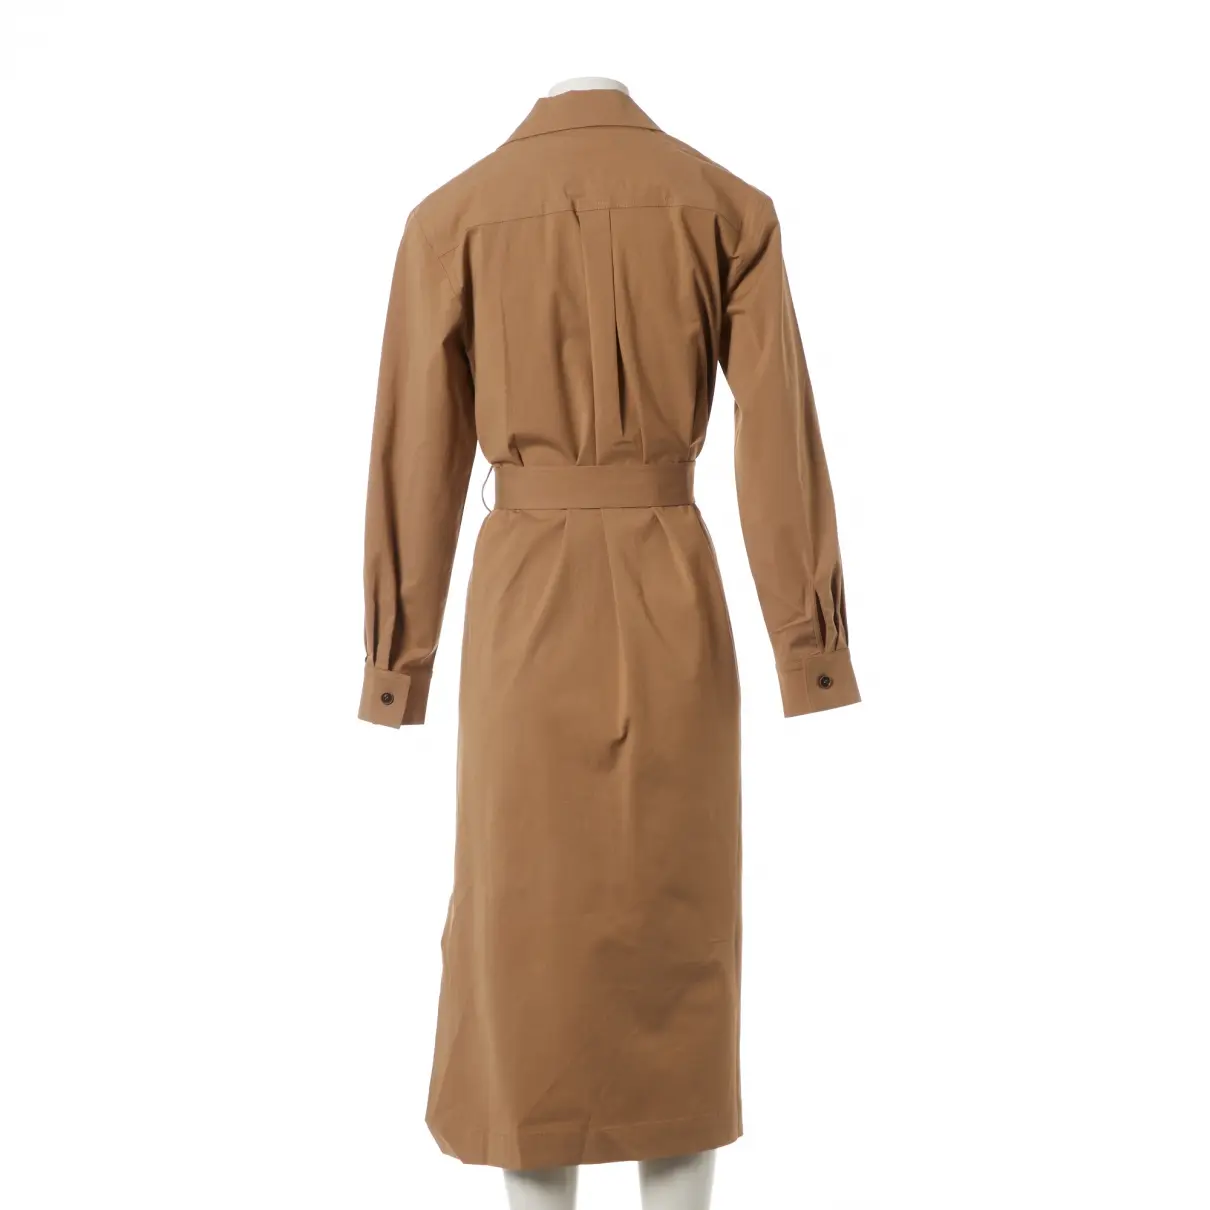 Buy Rejina Pyo x Vestiaire Collective Trench coat online